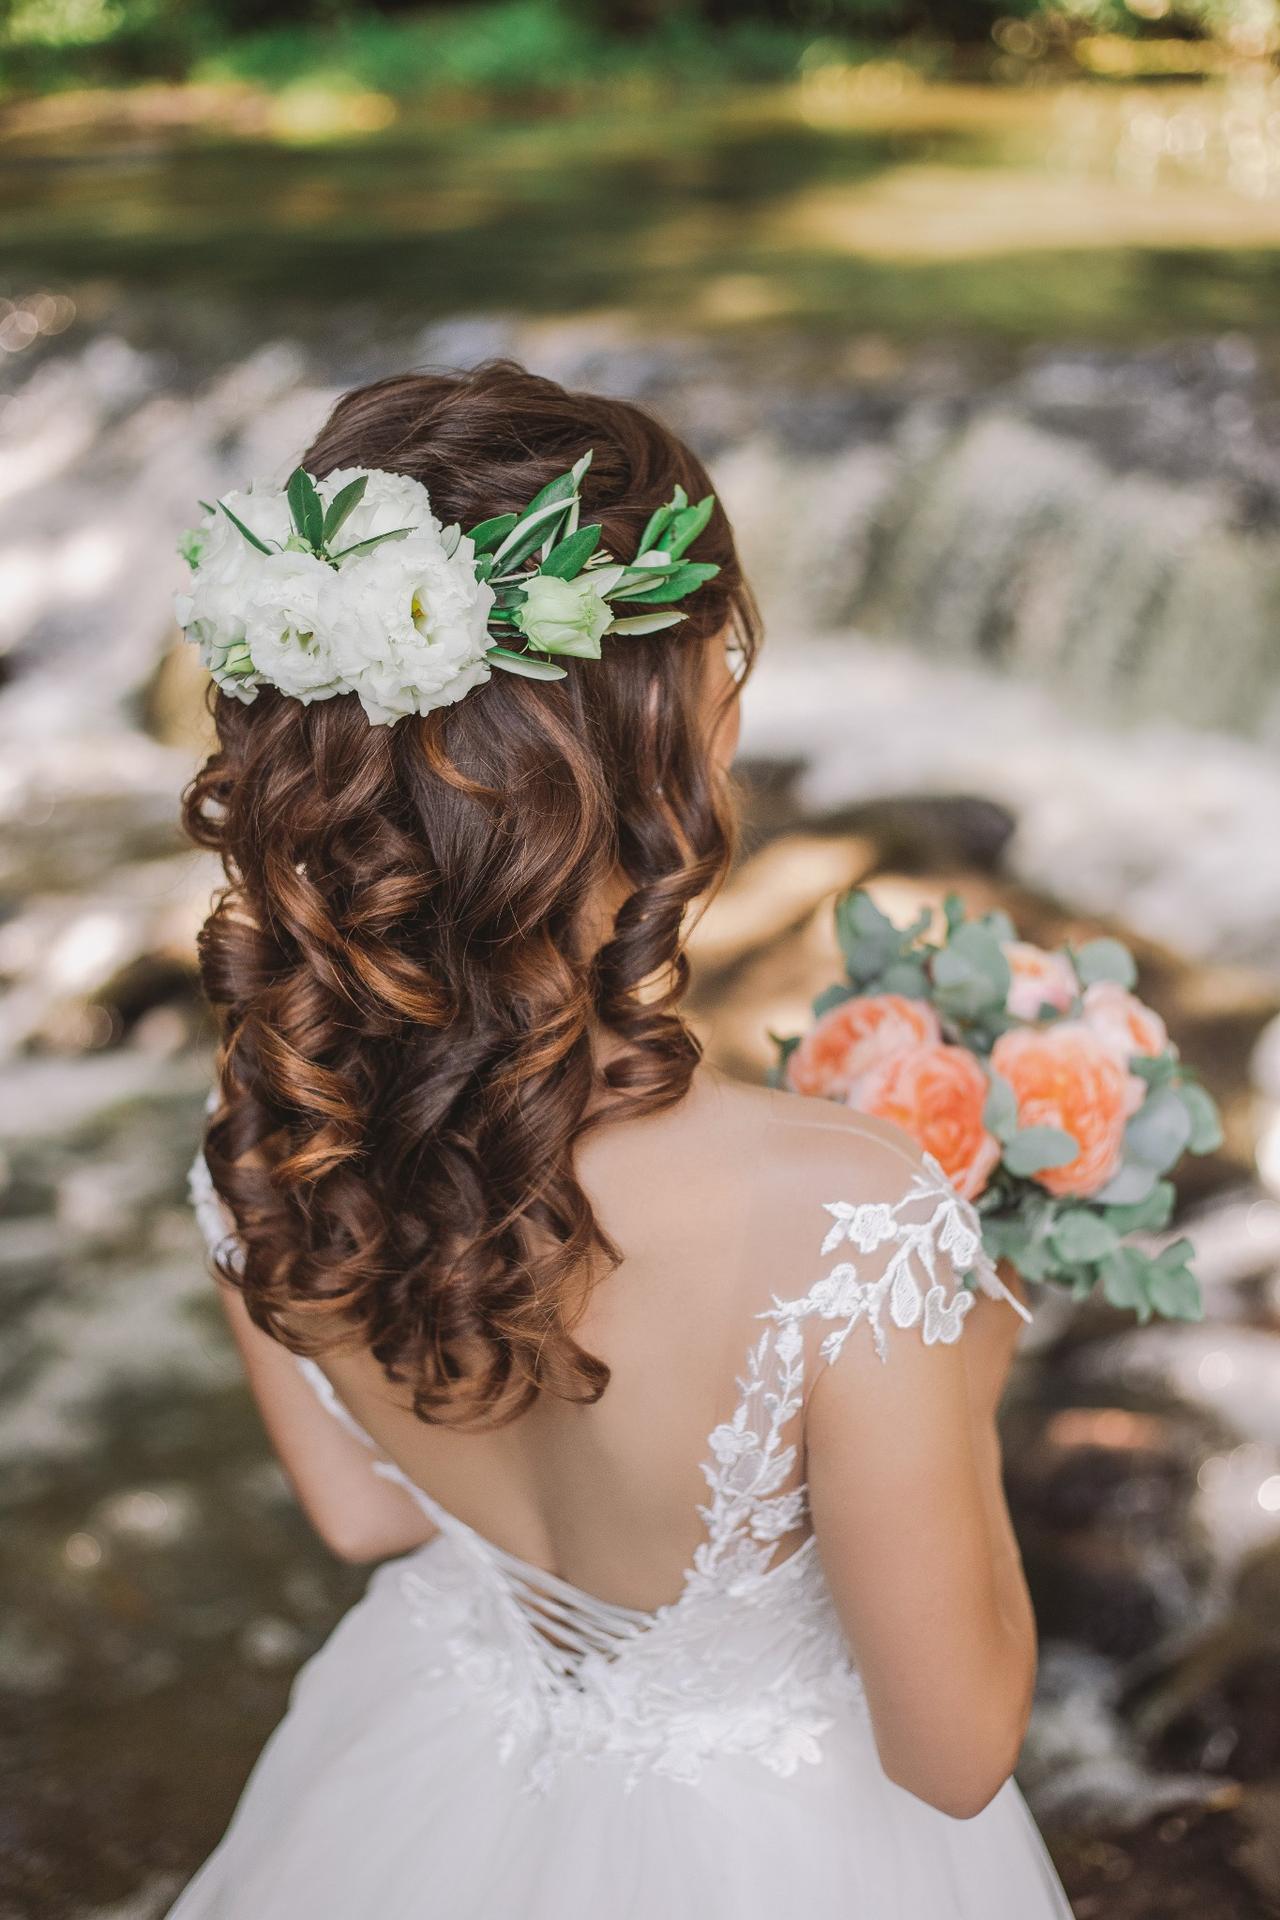 Peinados semirrecogidos para novia 35 opciones para la boda